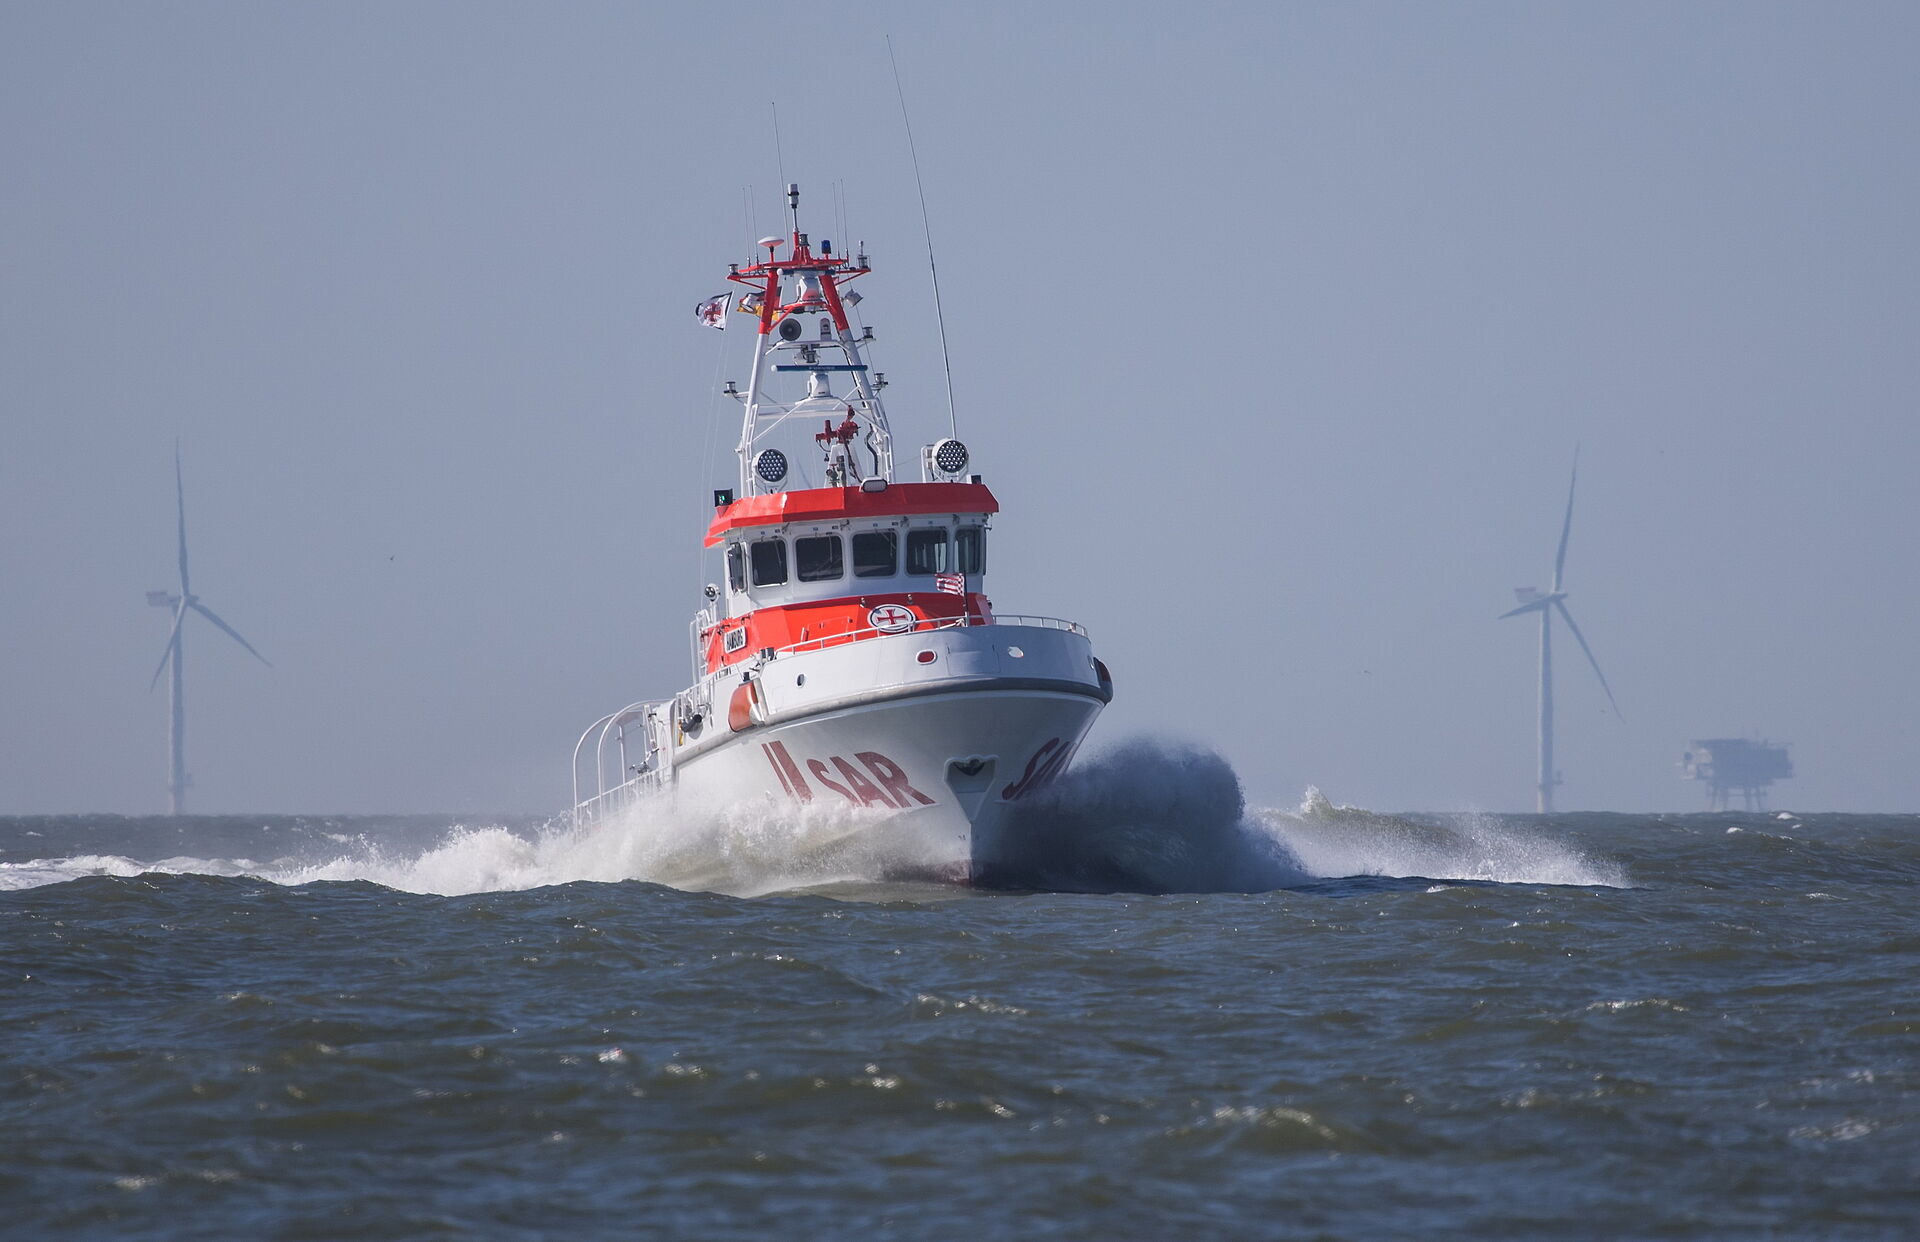 Seenotrettungskreuzer HAMBURG der DGzRS auf der Nordsee, im Hintergrund ist ein Offshore-Windpark zu sehen